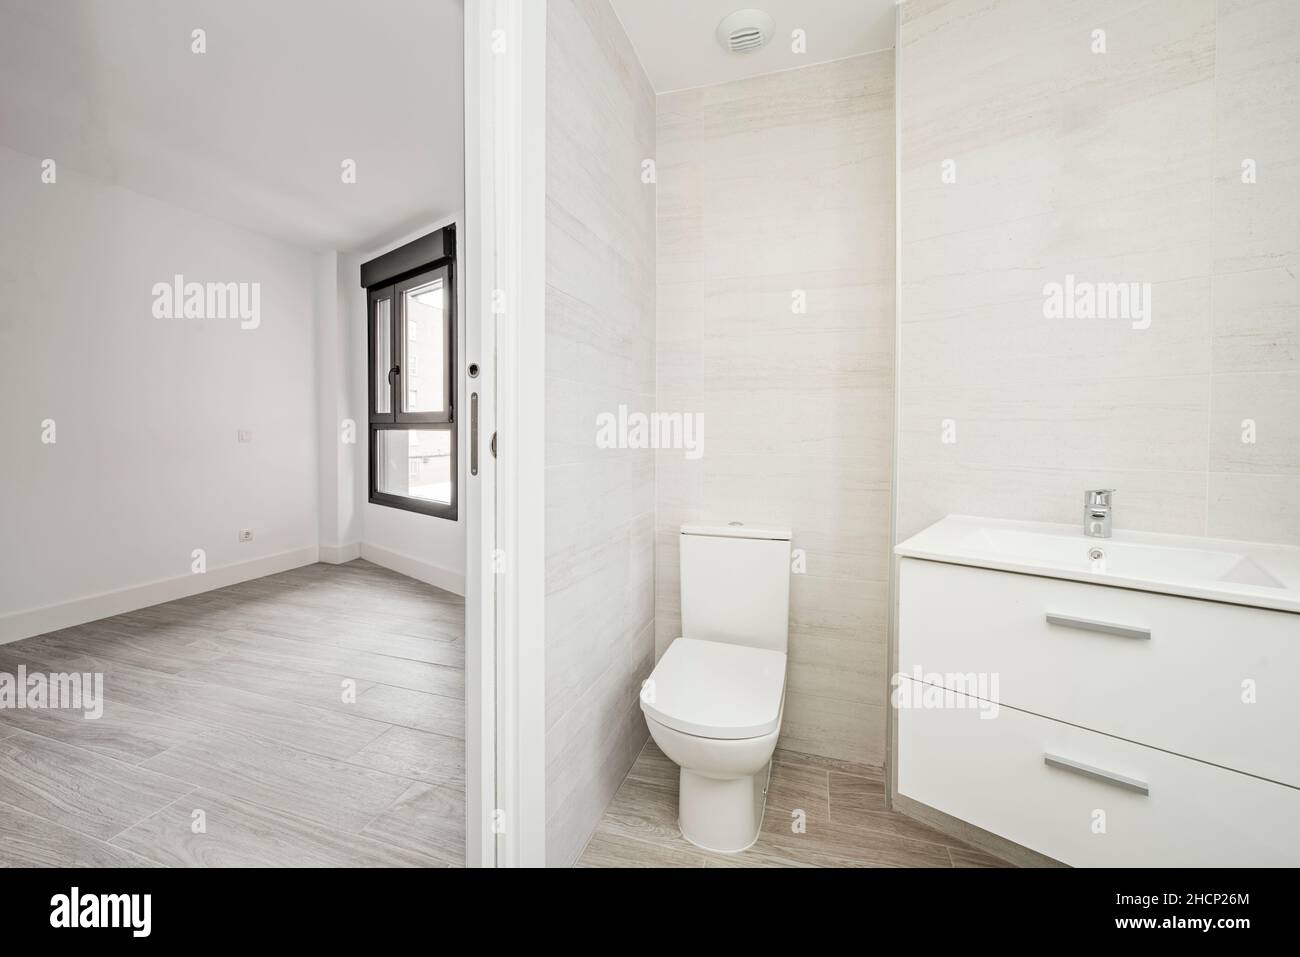 Inodoro con armario y lavabo blanco junto a una habitación vacía Foto de stock